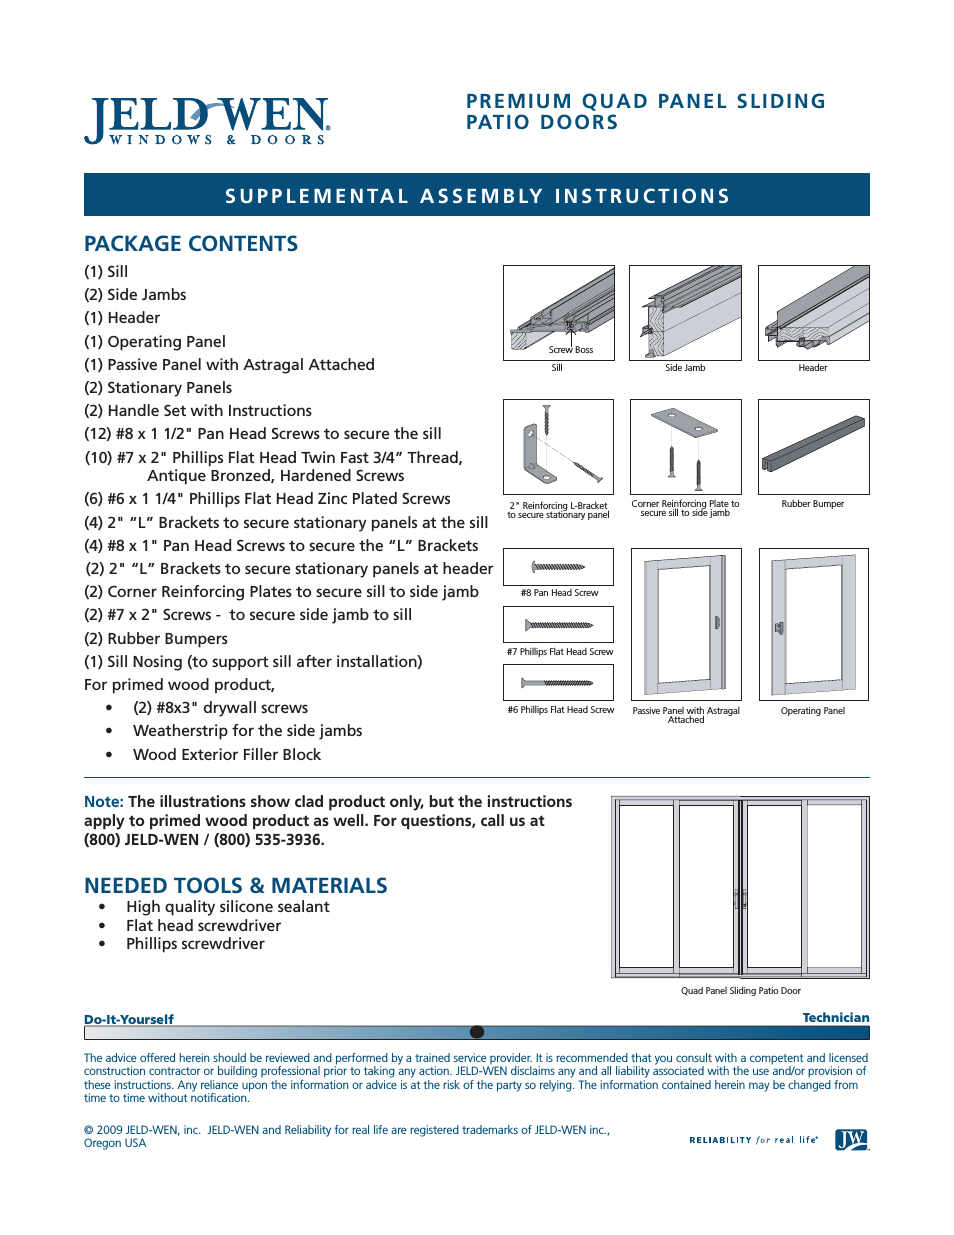 NDS002 Premium Quad Panel Sliding Patio Doors